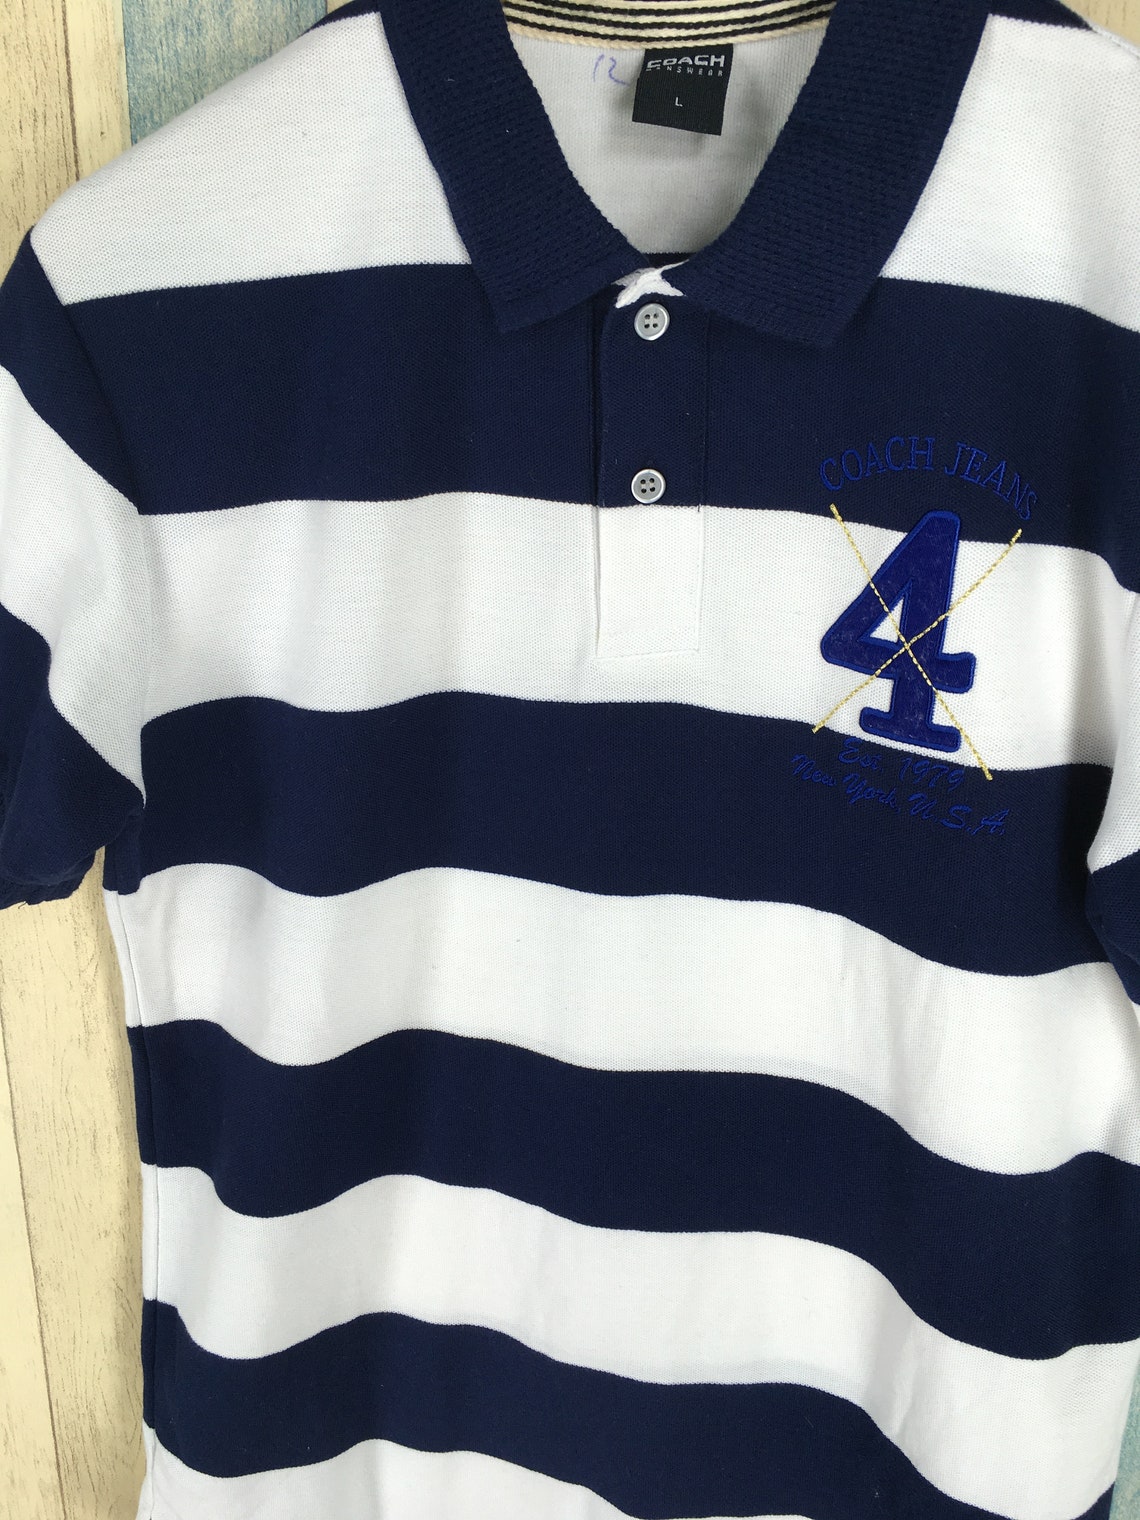 Vintage Coach Menswear Polo Stripes White Blue Shirt Size | Etsy